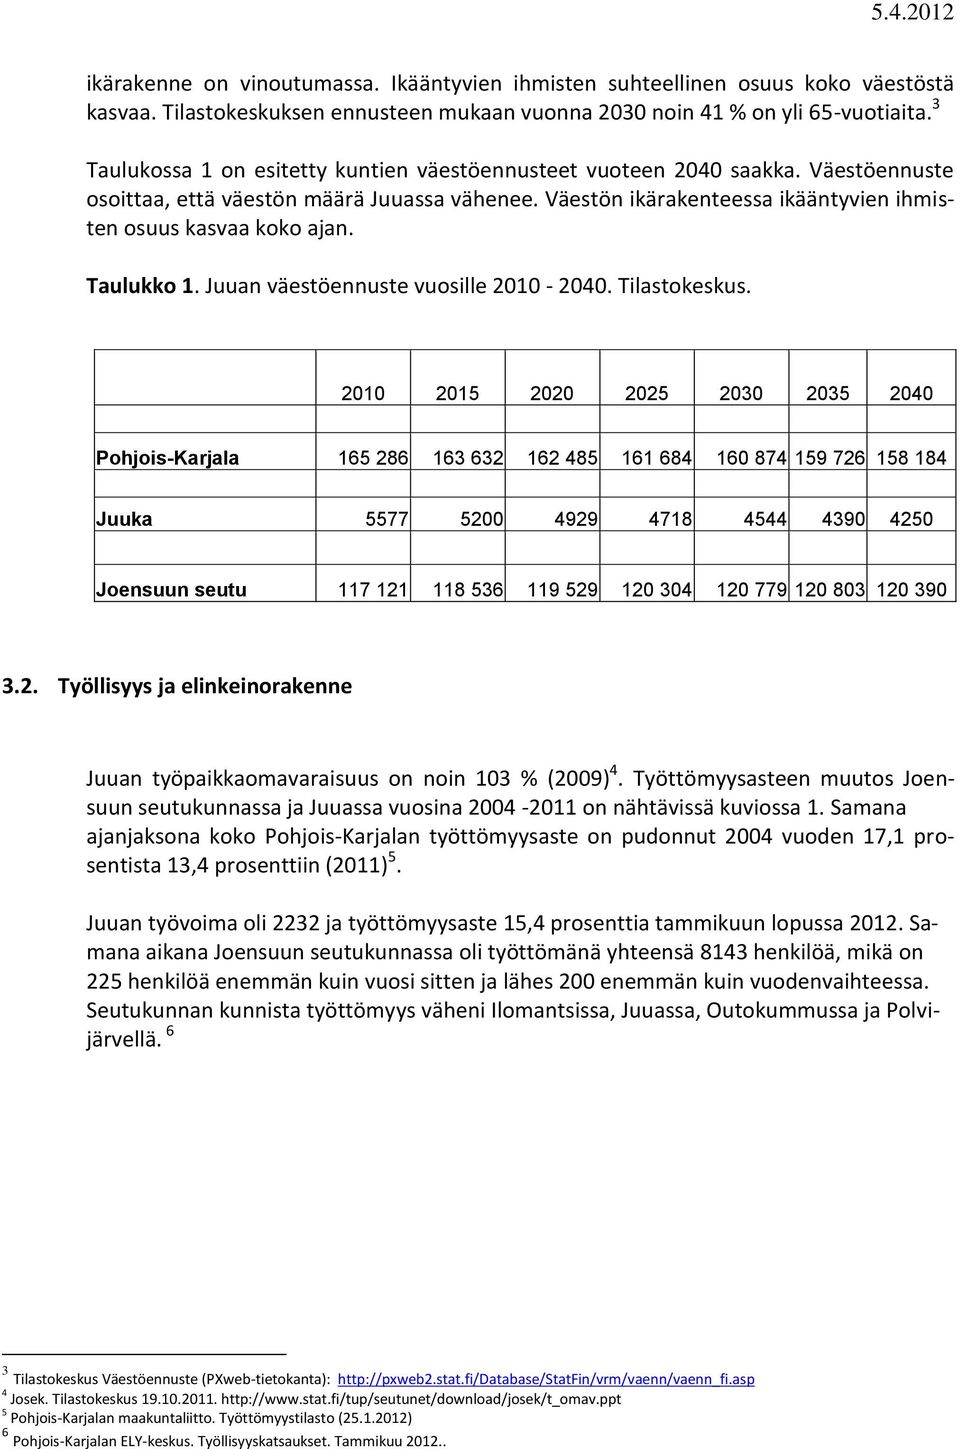 Taulukko 1. Juuan väestöennuste vuosille 2010-2040. Tilastokeskus.